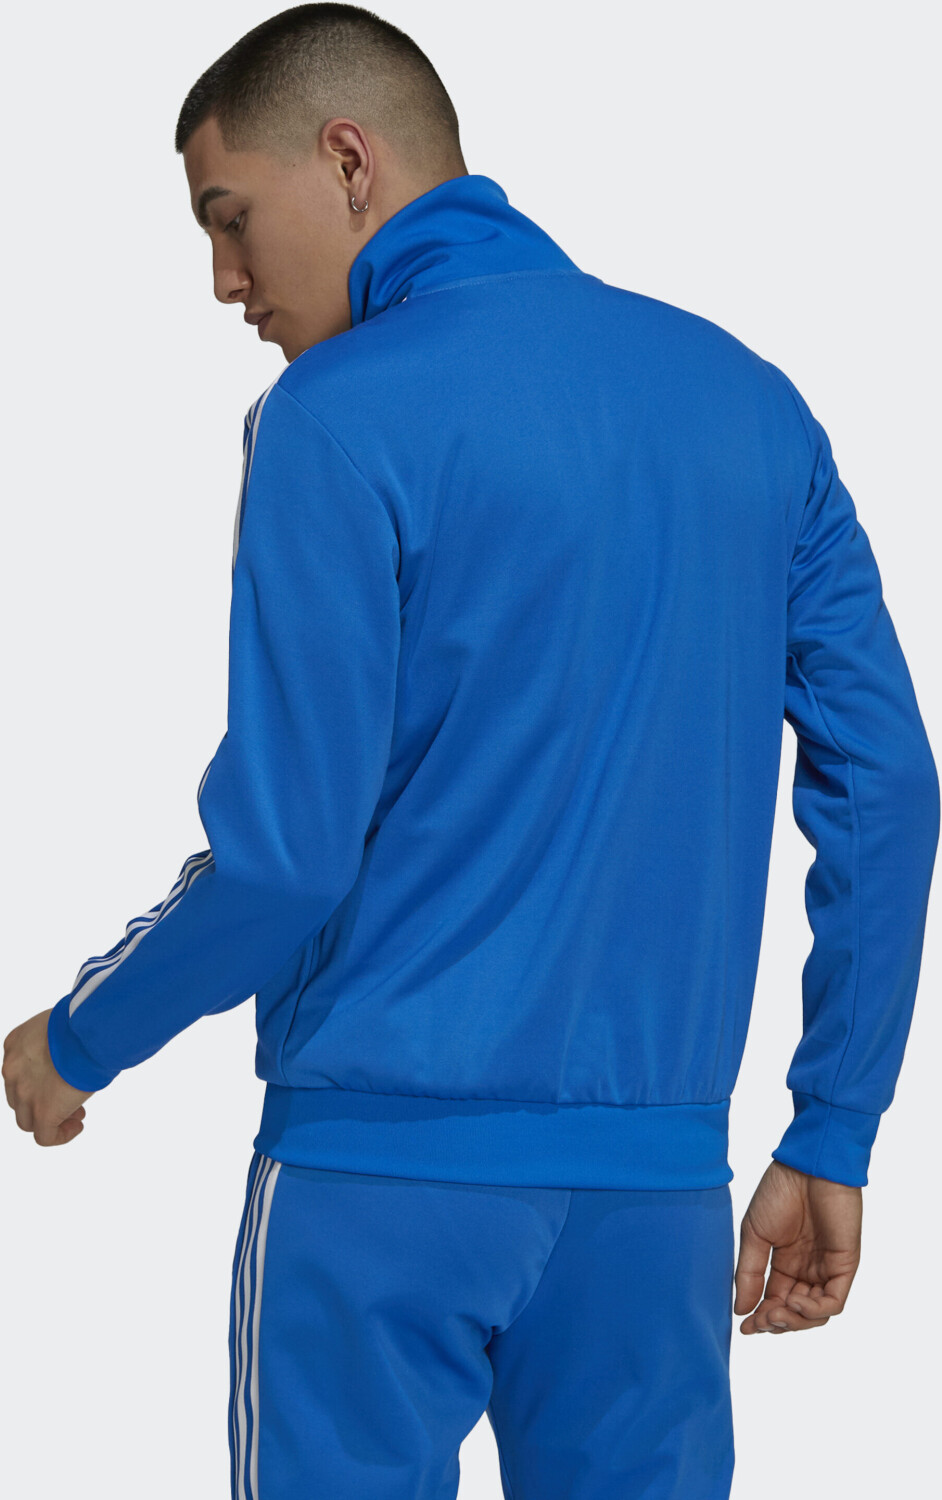 | blue 62,10 Originals (H09113) adicolor bei € Adidas Classics bird Jacket Primeblue ab Beckenbauer Preisvergleich